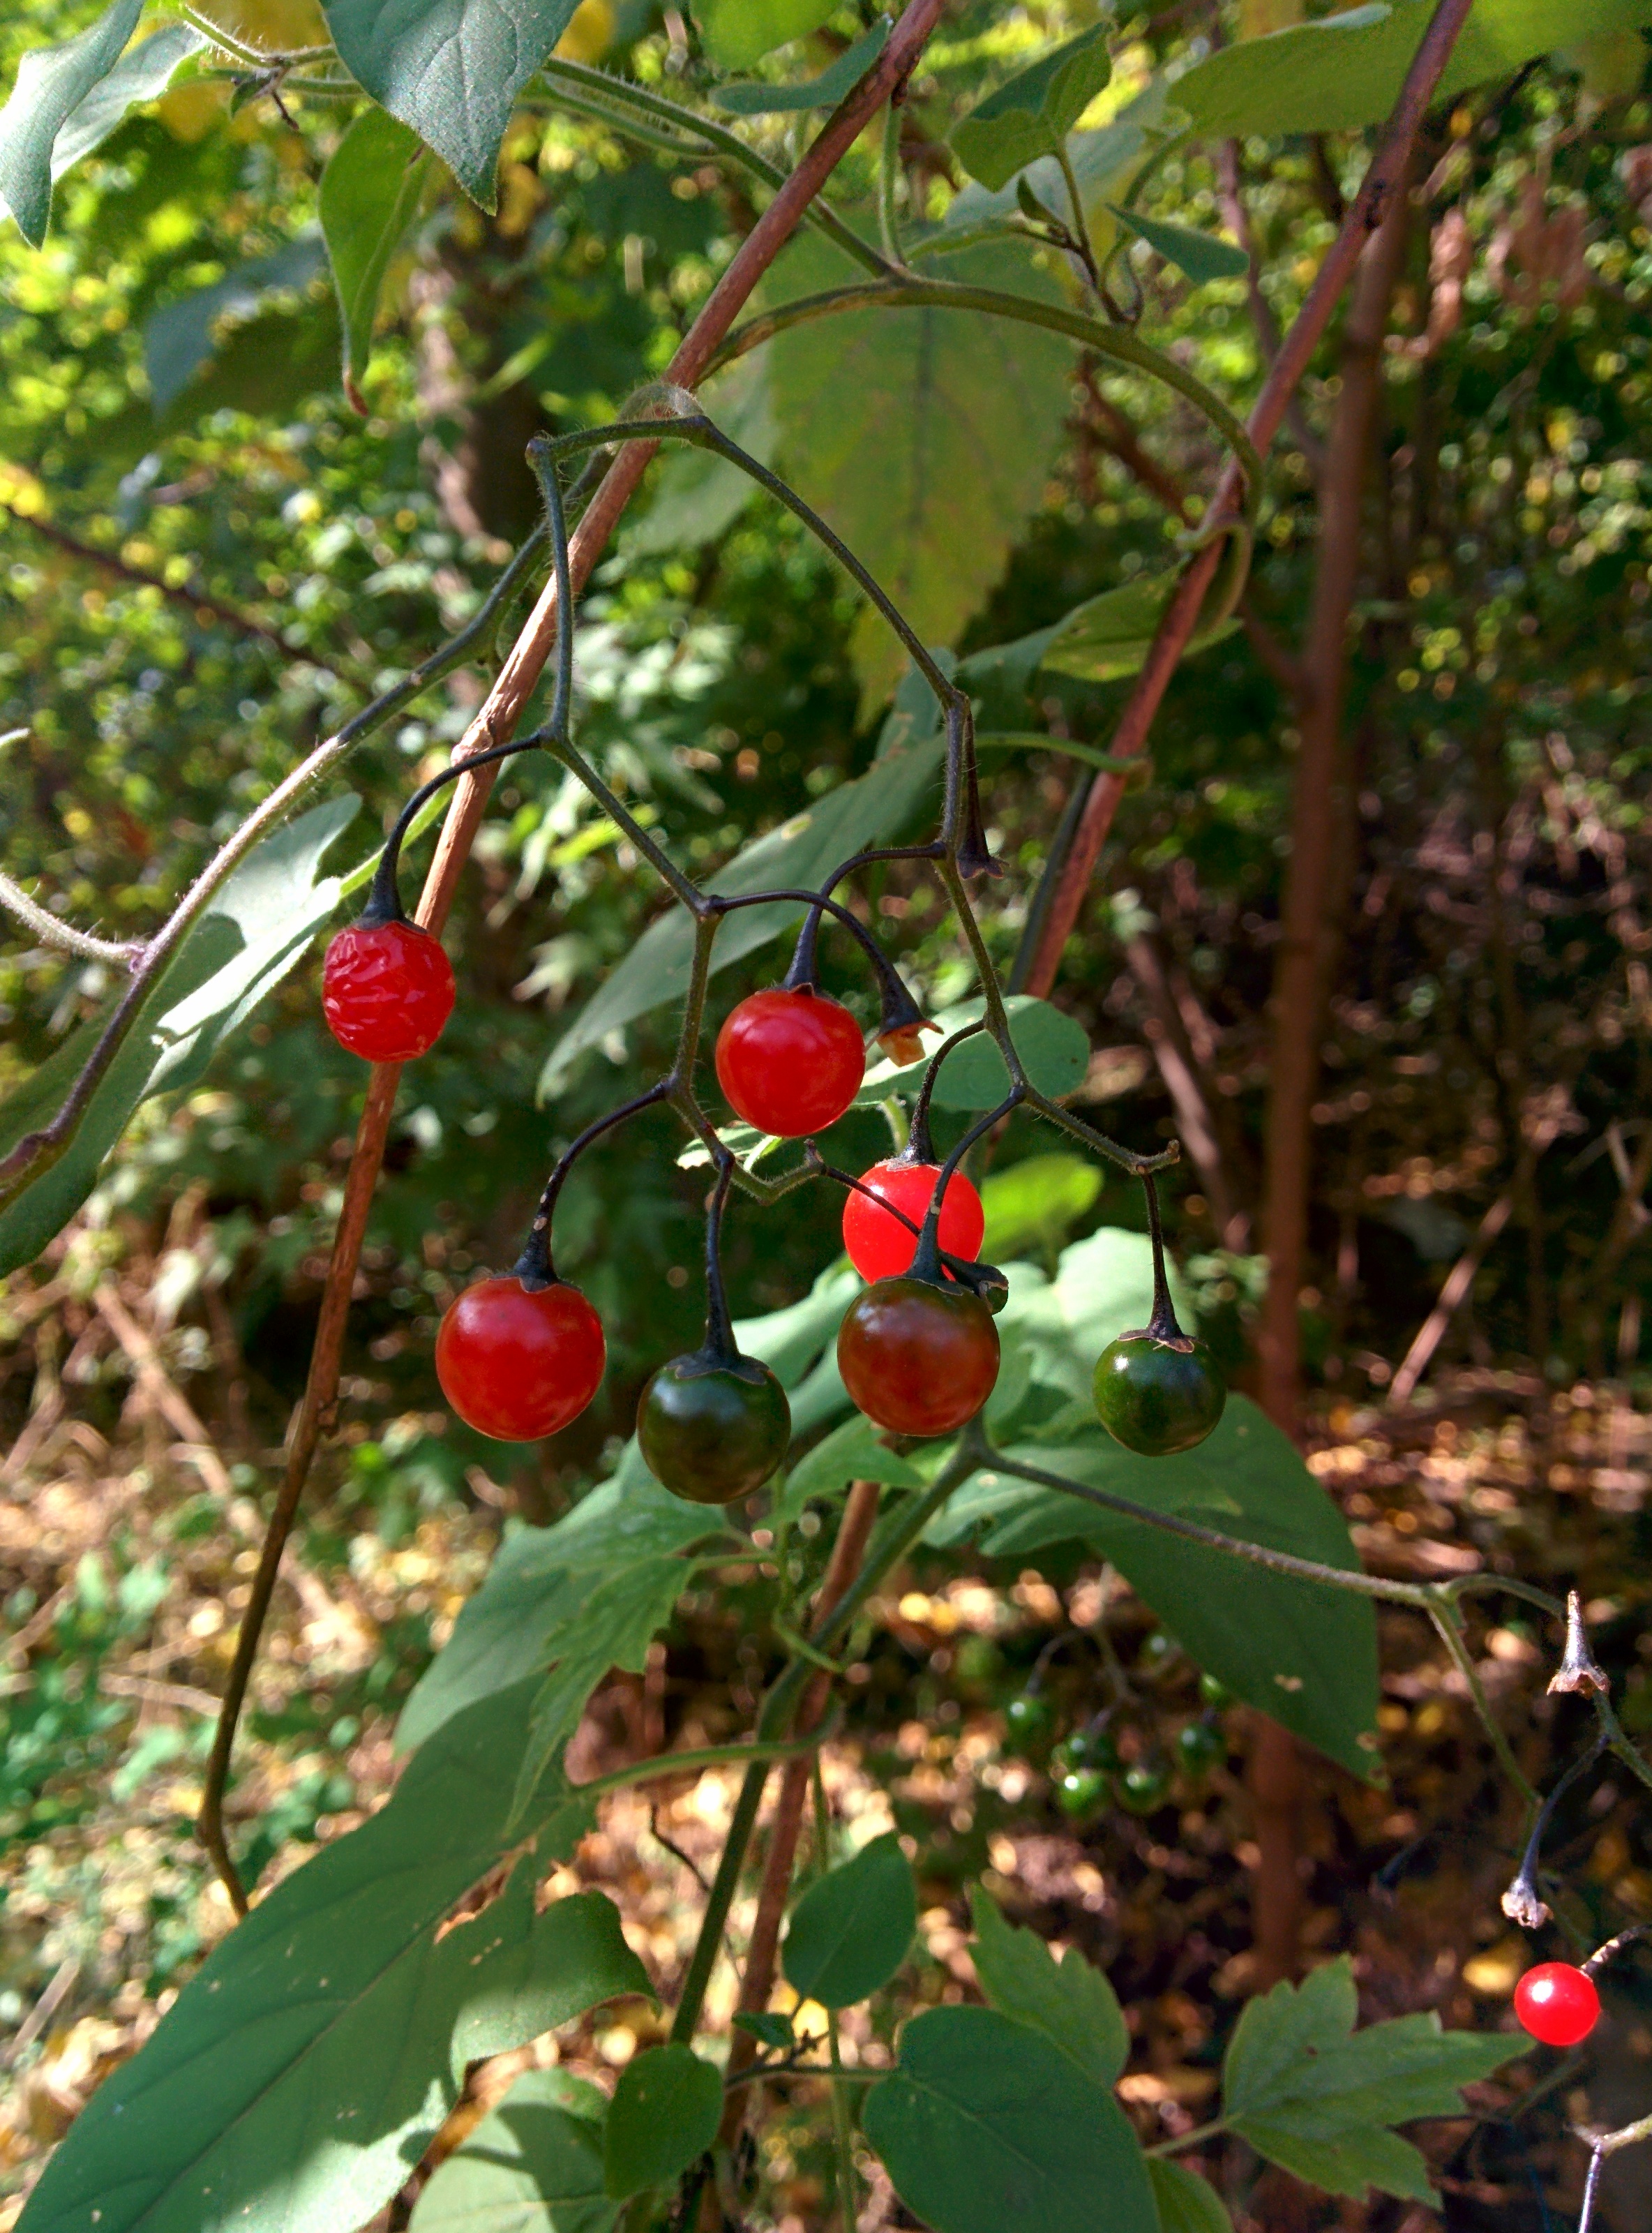 IMG_20151026_125033.jpg 방울토마토 닮은 작은 빨간색 열매가 달린 덩굴식물 -- 배풍등